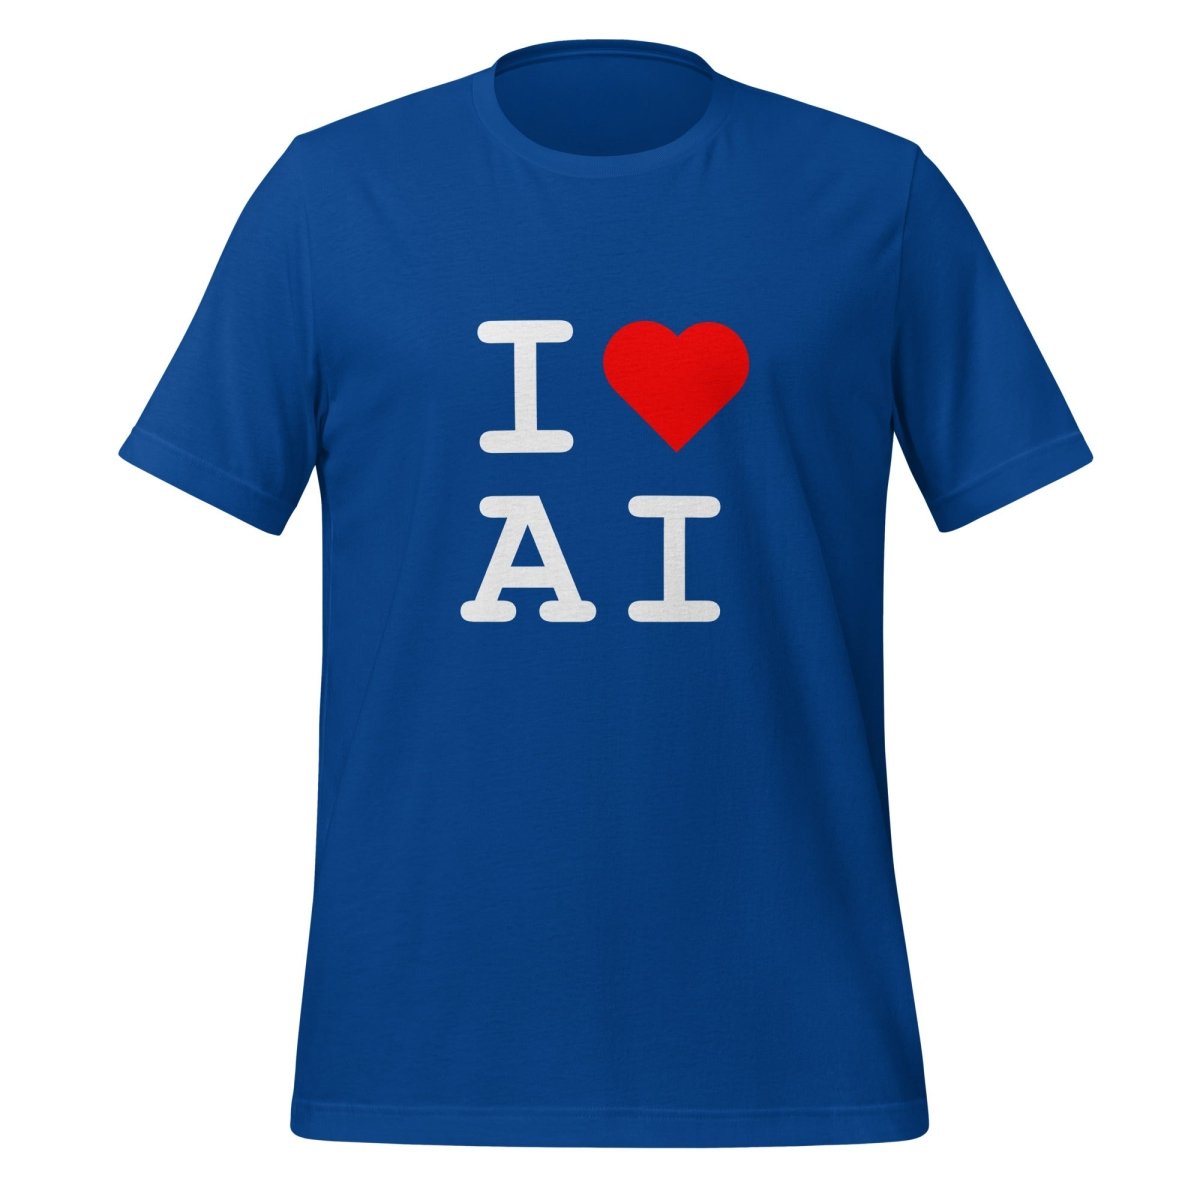 I Heart AI T - Shirt 1 (unisex) - True Royal - AI Store